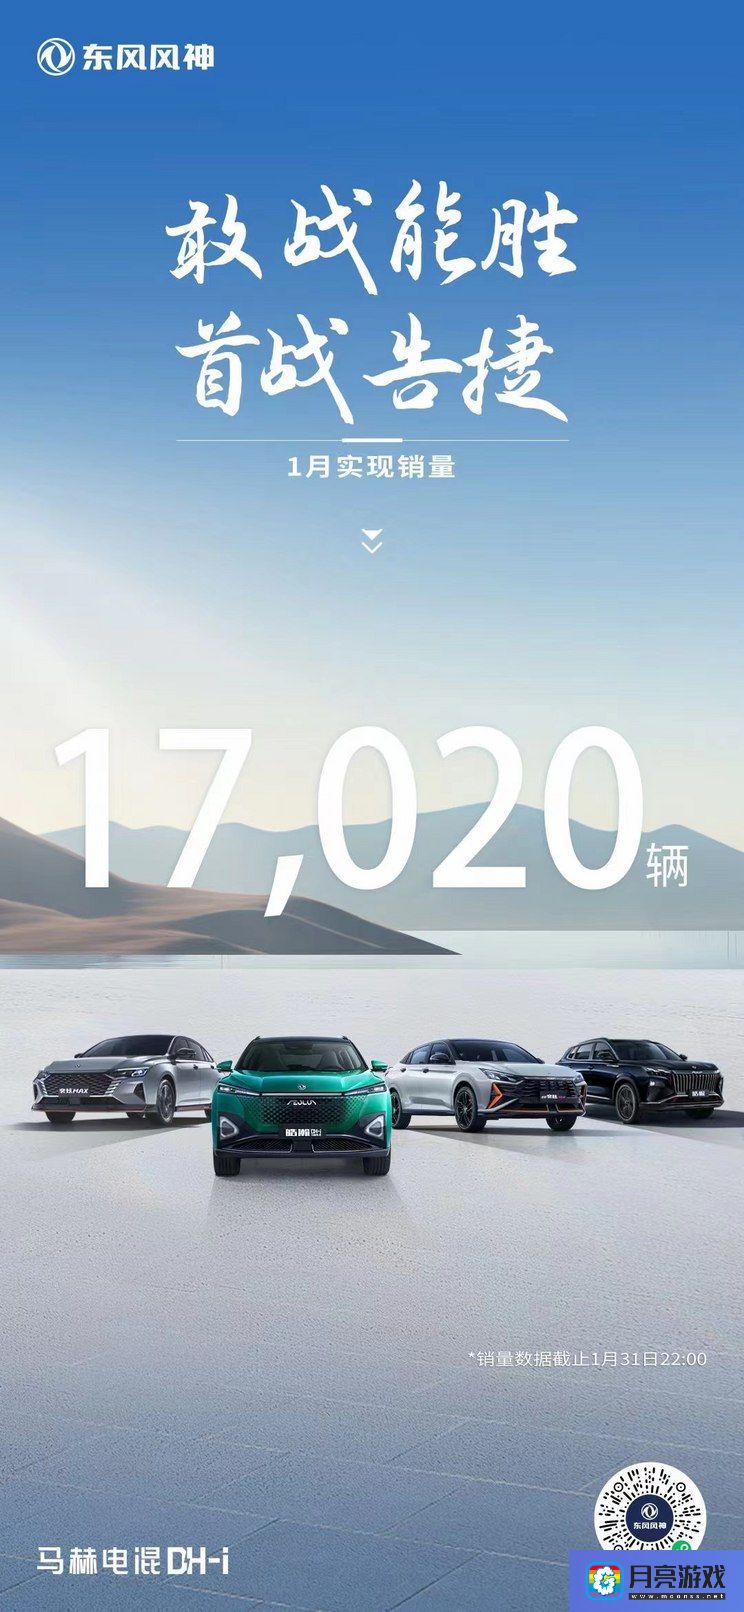 汽车-2年推5款新车 东风风神1月销量17020台-专题资讯